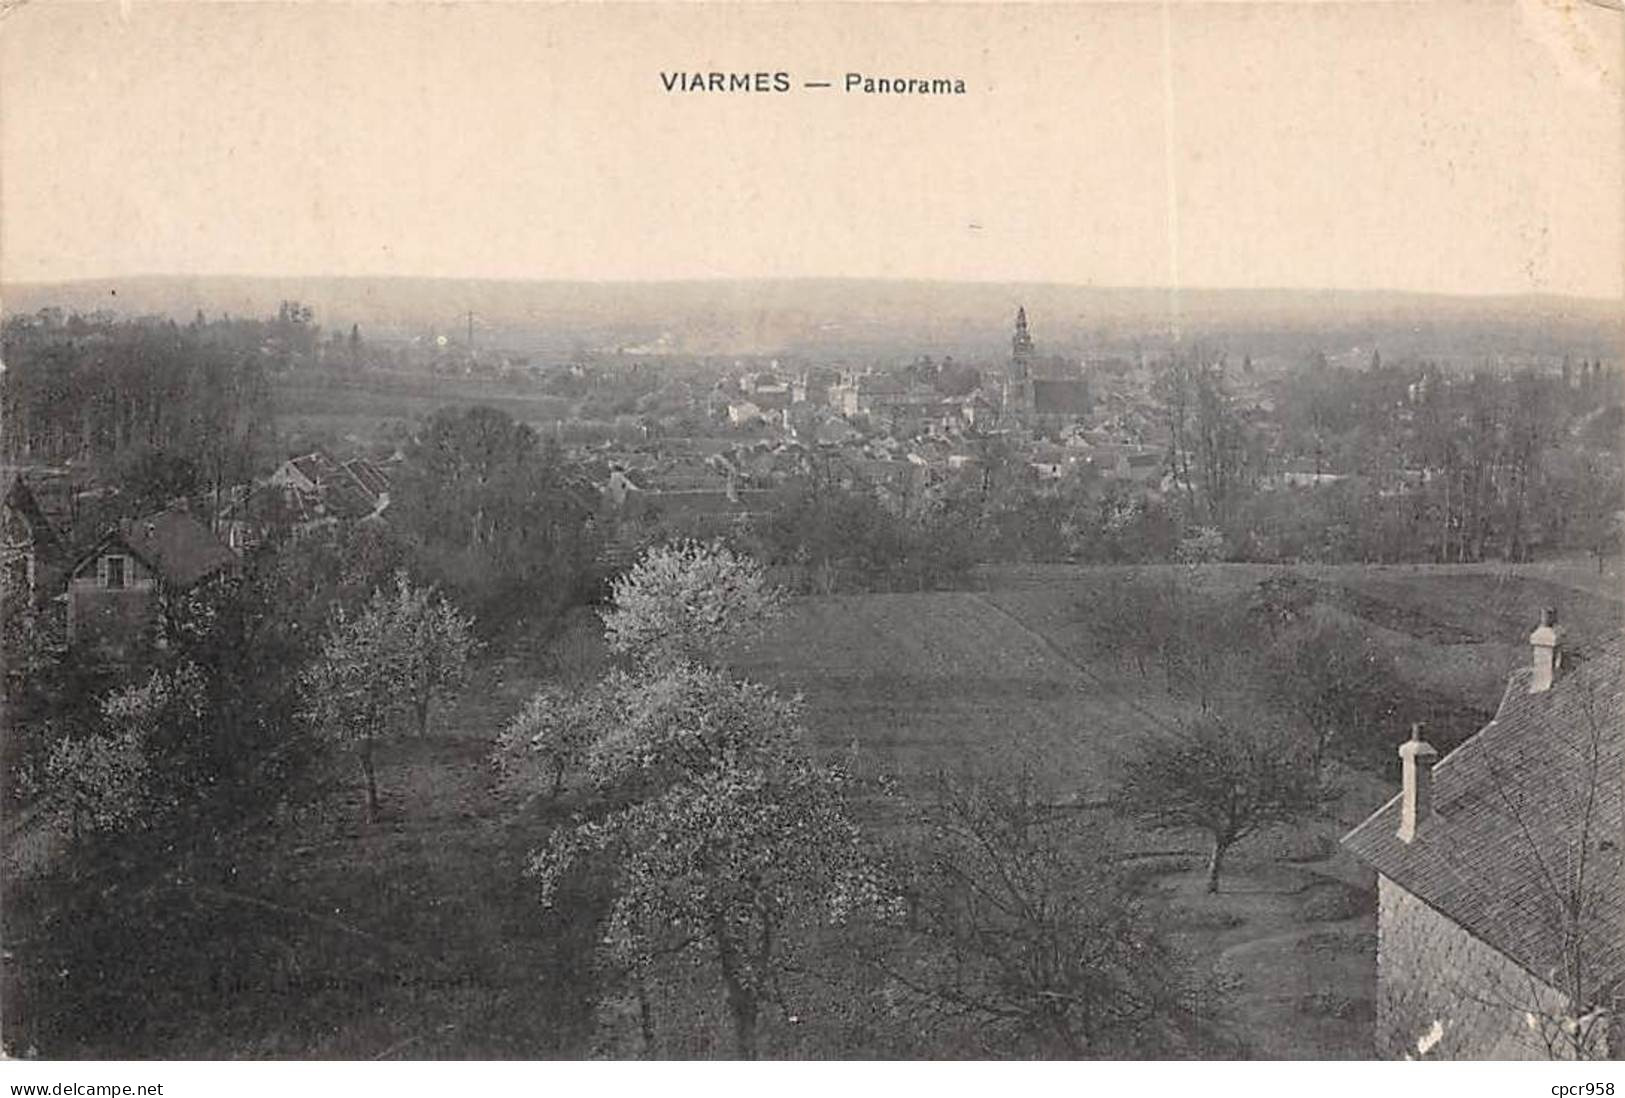 95 - VIARMES - SAN66442 - Panorama - Viarmes